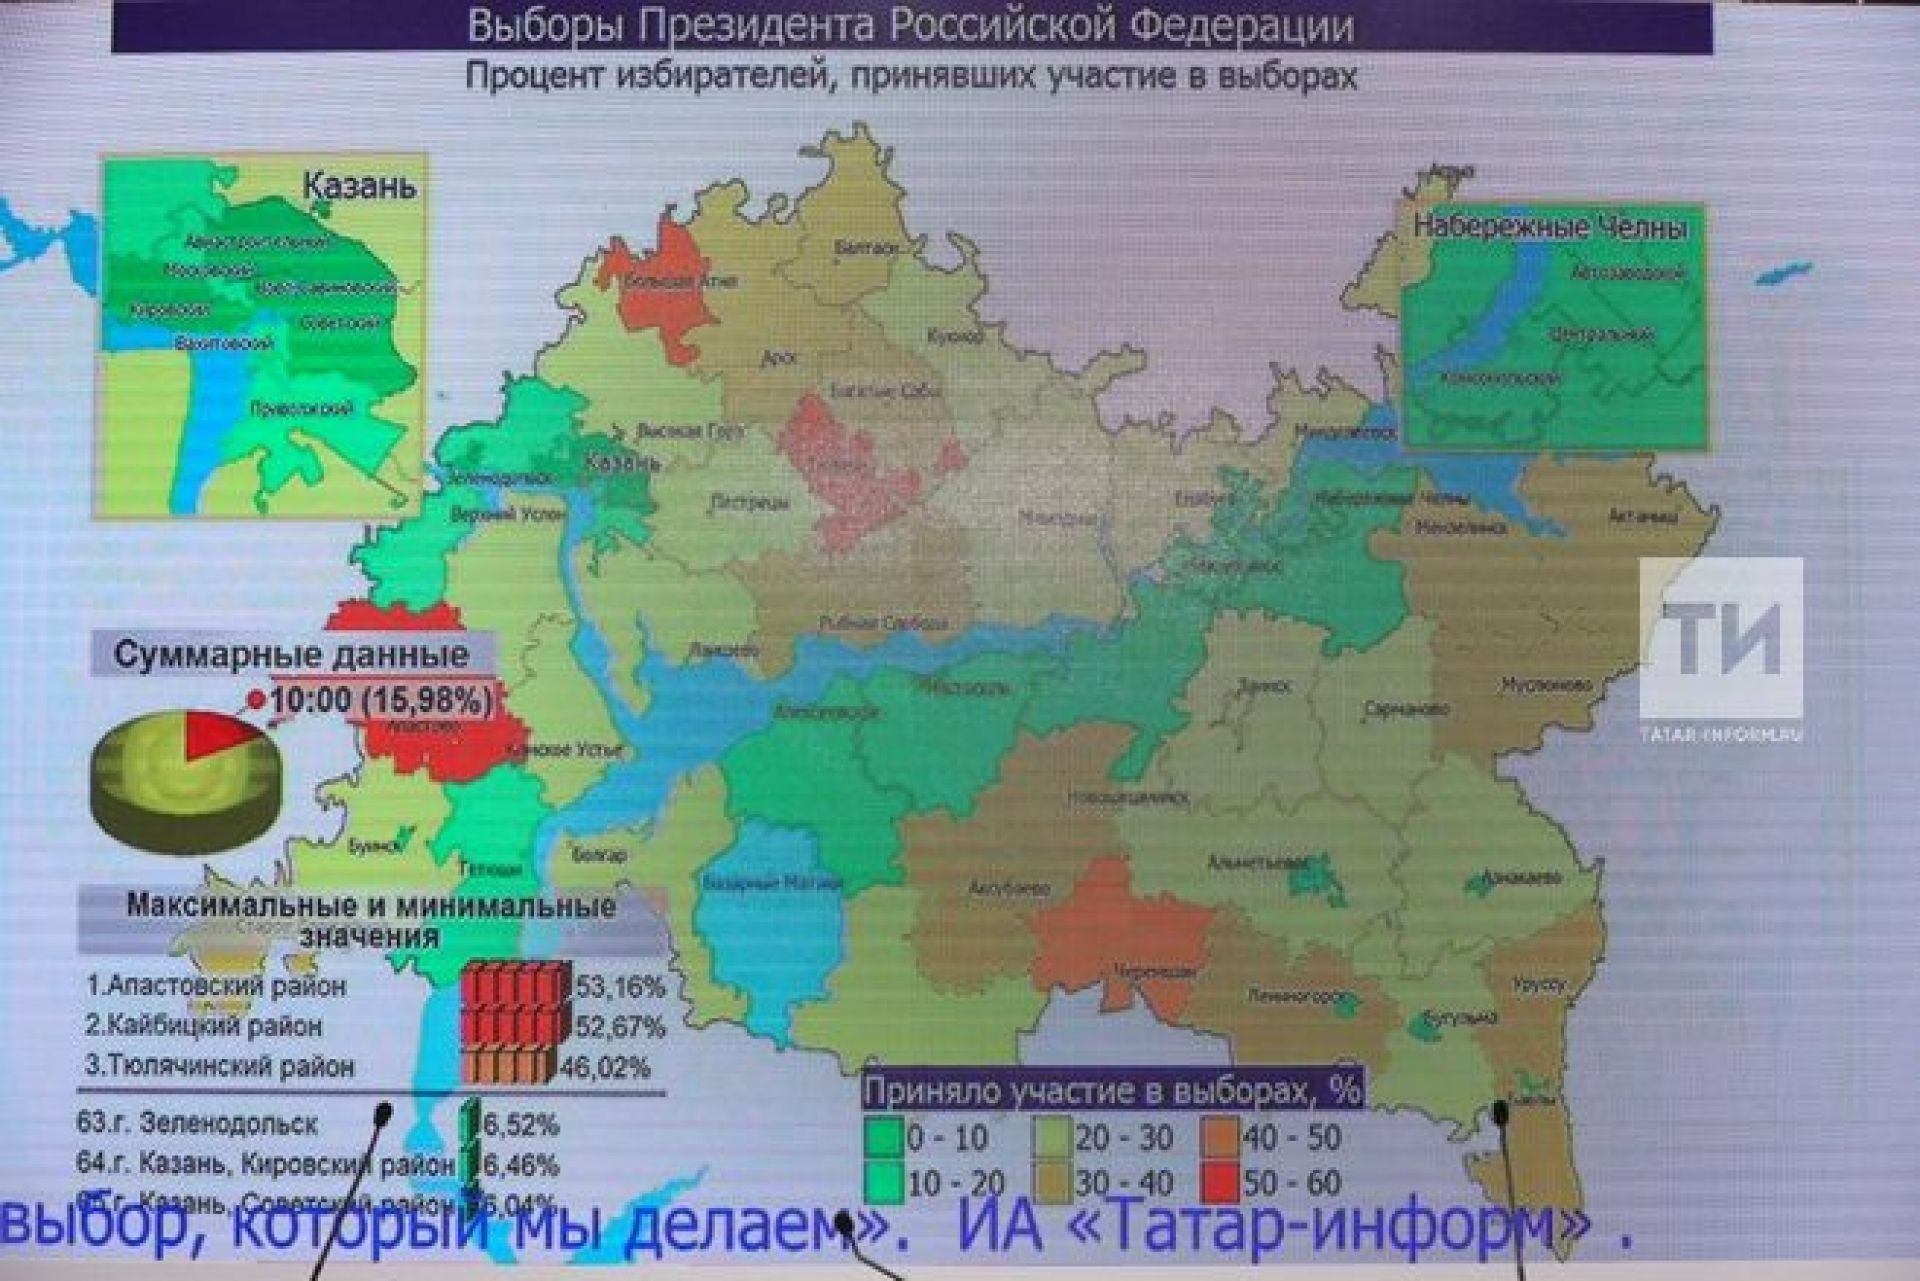 Как проголосовал татарстан. Процент проголосовавших по регионам. Карта голосования в России. Выборы в Татарстане больше 100 процентов.